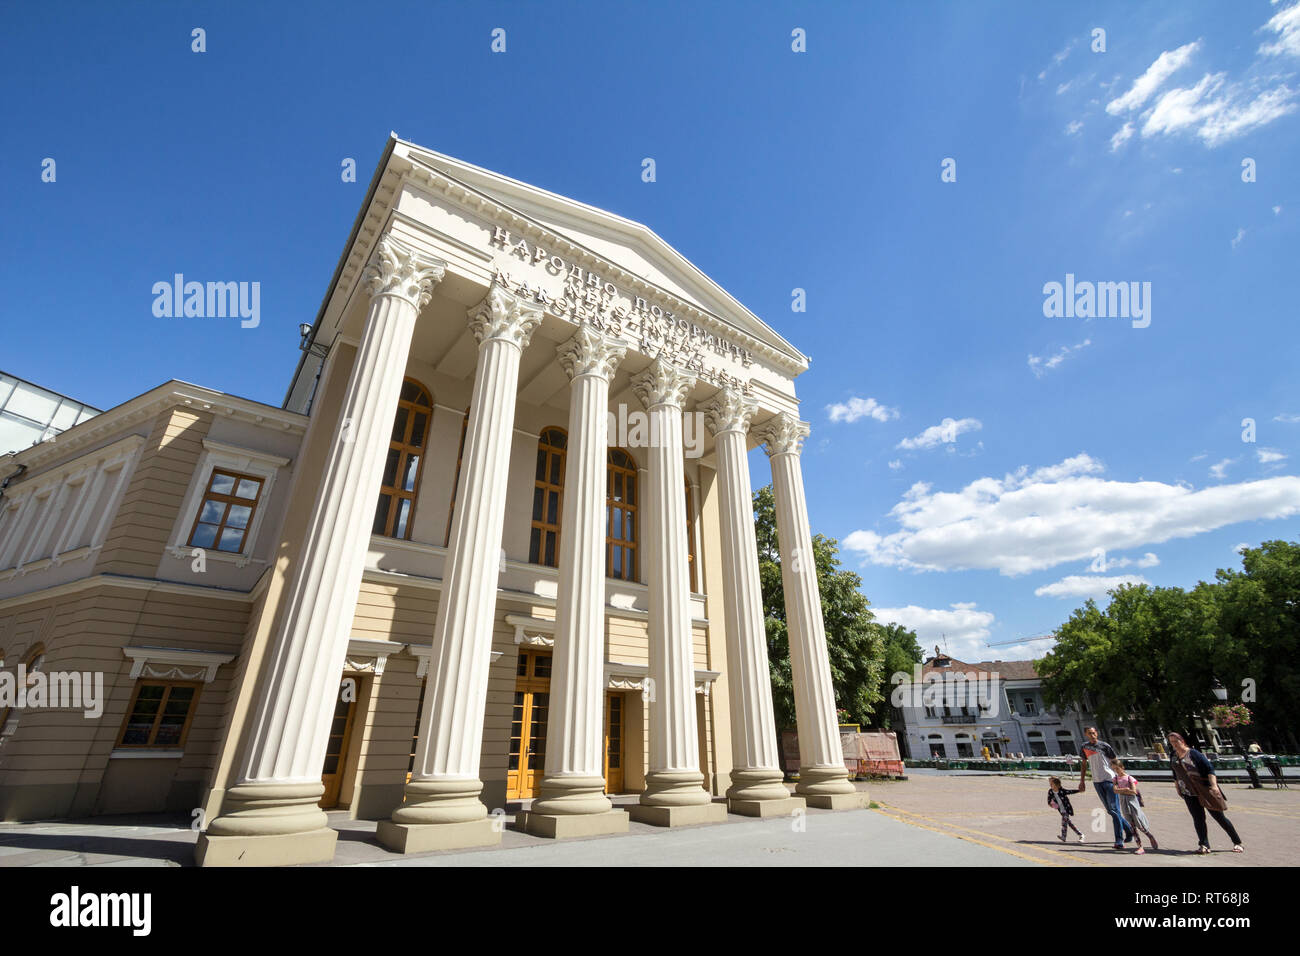 SUBOTICA, Serbien - Juli 1, 2018: Fassade des Nationaltheaters von Subotica, mit Erwähnung Nationaltheater in Serbisch, Kroatisch und Ungarisch übersetzt Stockfoto